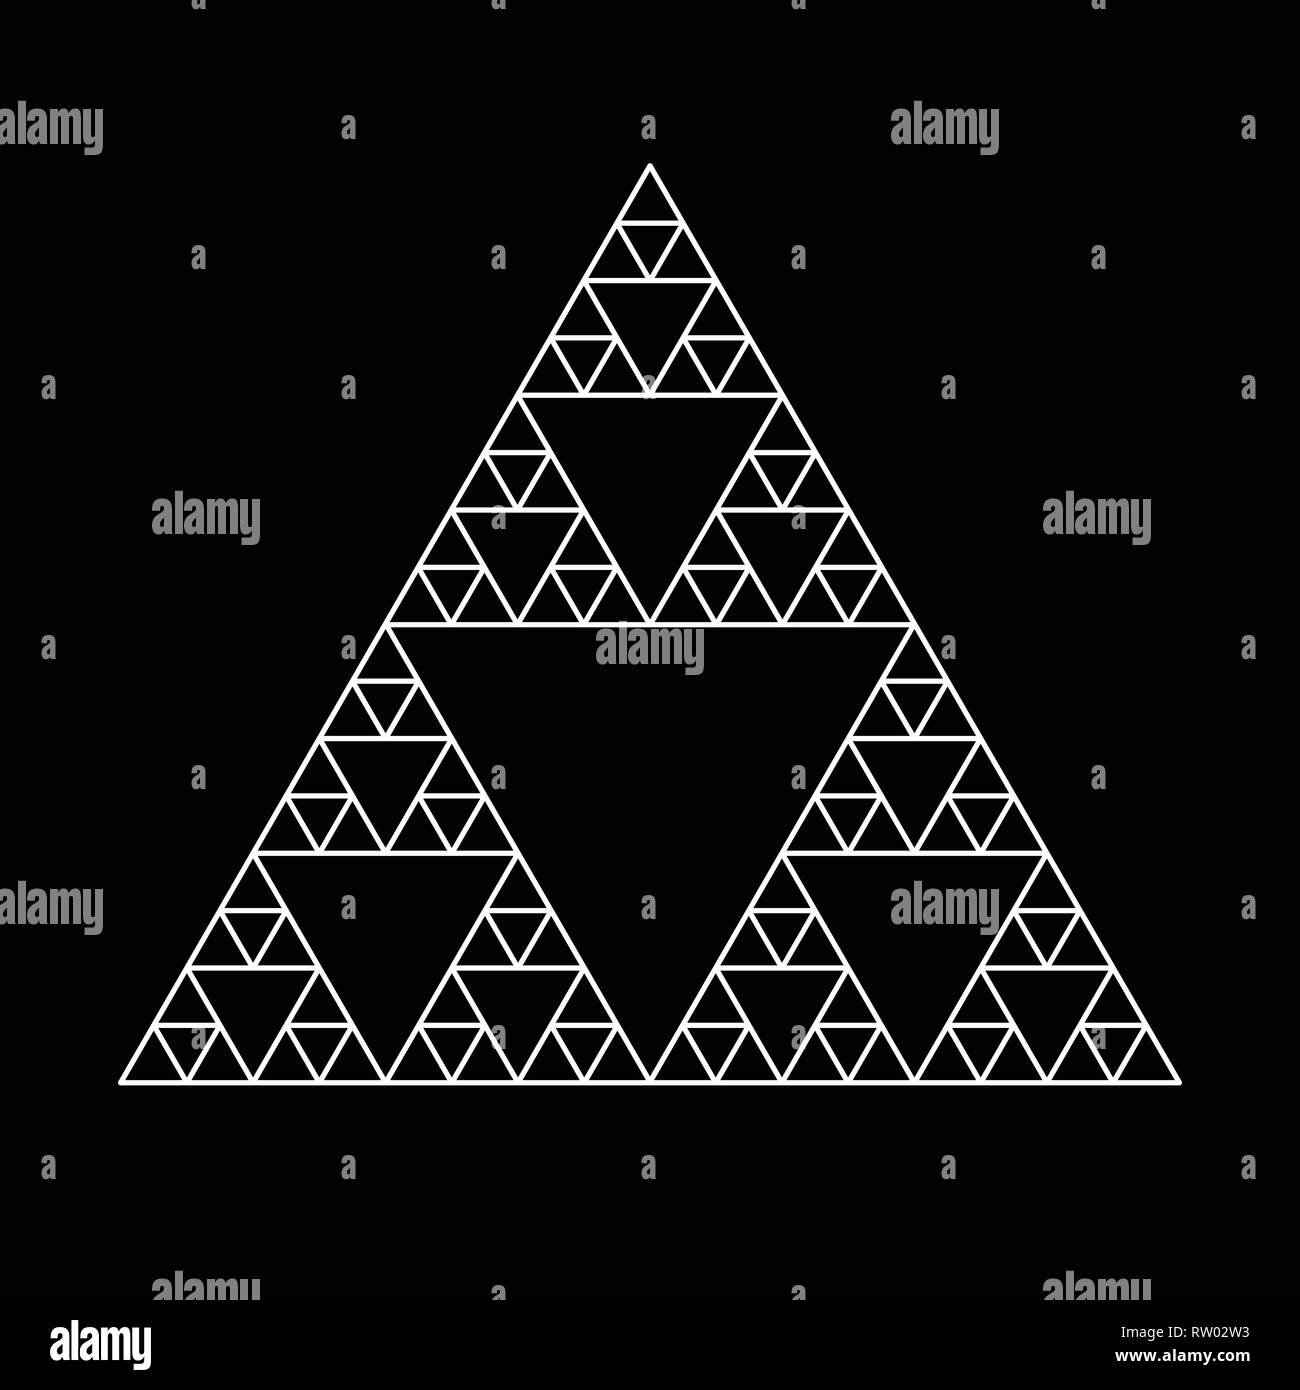 Heilige Geometrie Dreieck auf der Grundlage Symbol und Elemente. Alchemie, Religion, Philosophie, Astrologie und Spiritualität Themen für Design Stock Vektor